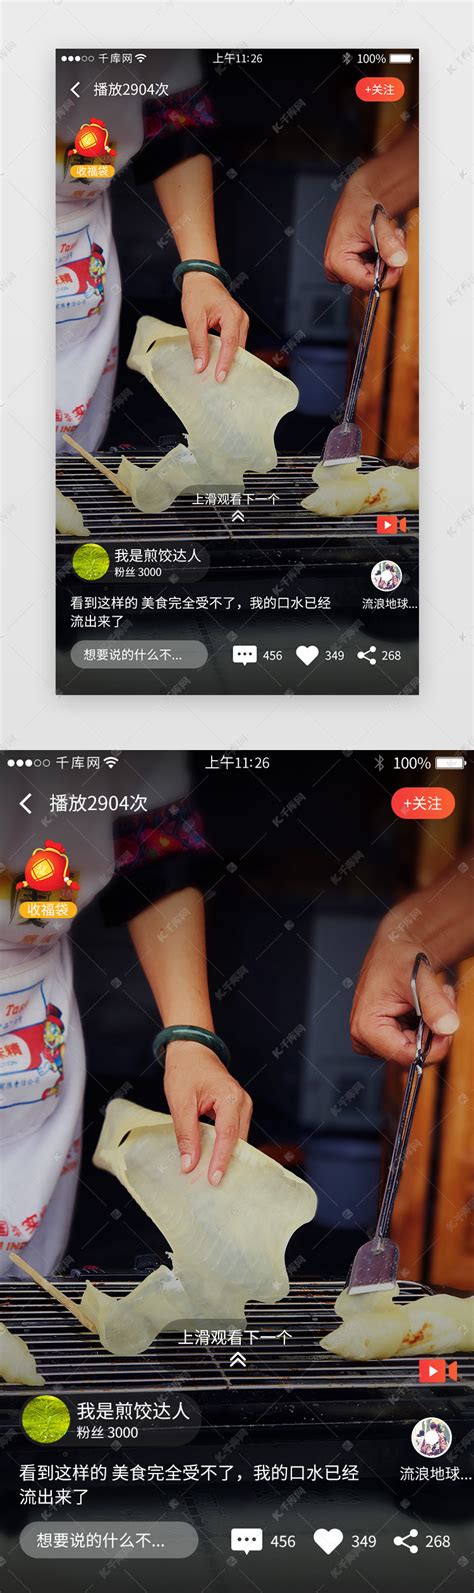 短视频app界面模板ui界面设计素材-千库网